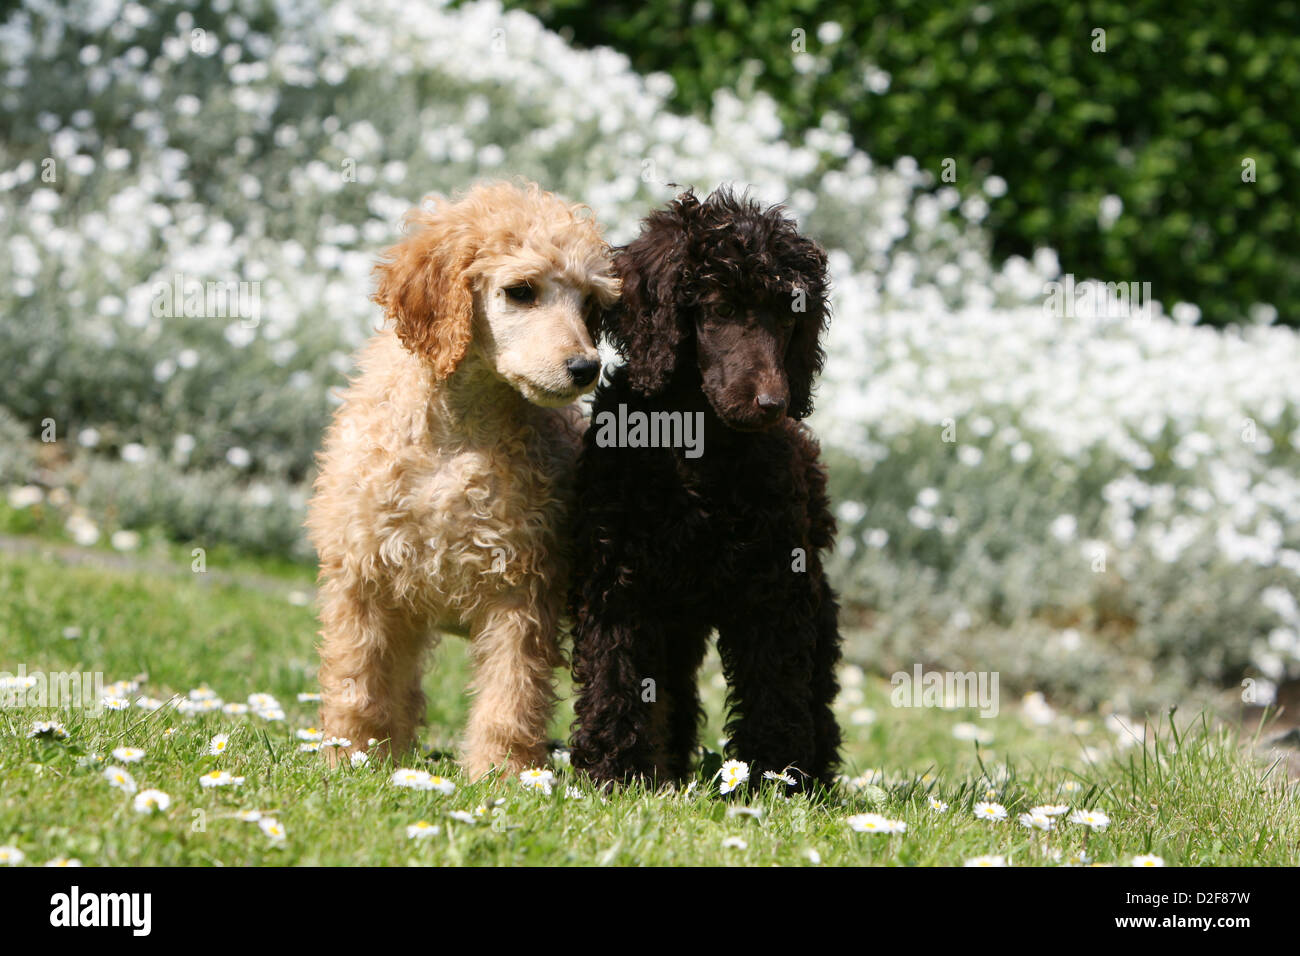 Pudel Hund / Pudel / Caniche standard Grande Riese zwei Welpen verschiedene Farben (Apricot und braun) steht in einem Garten Stockfoto